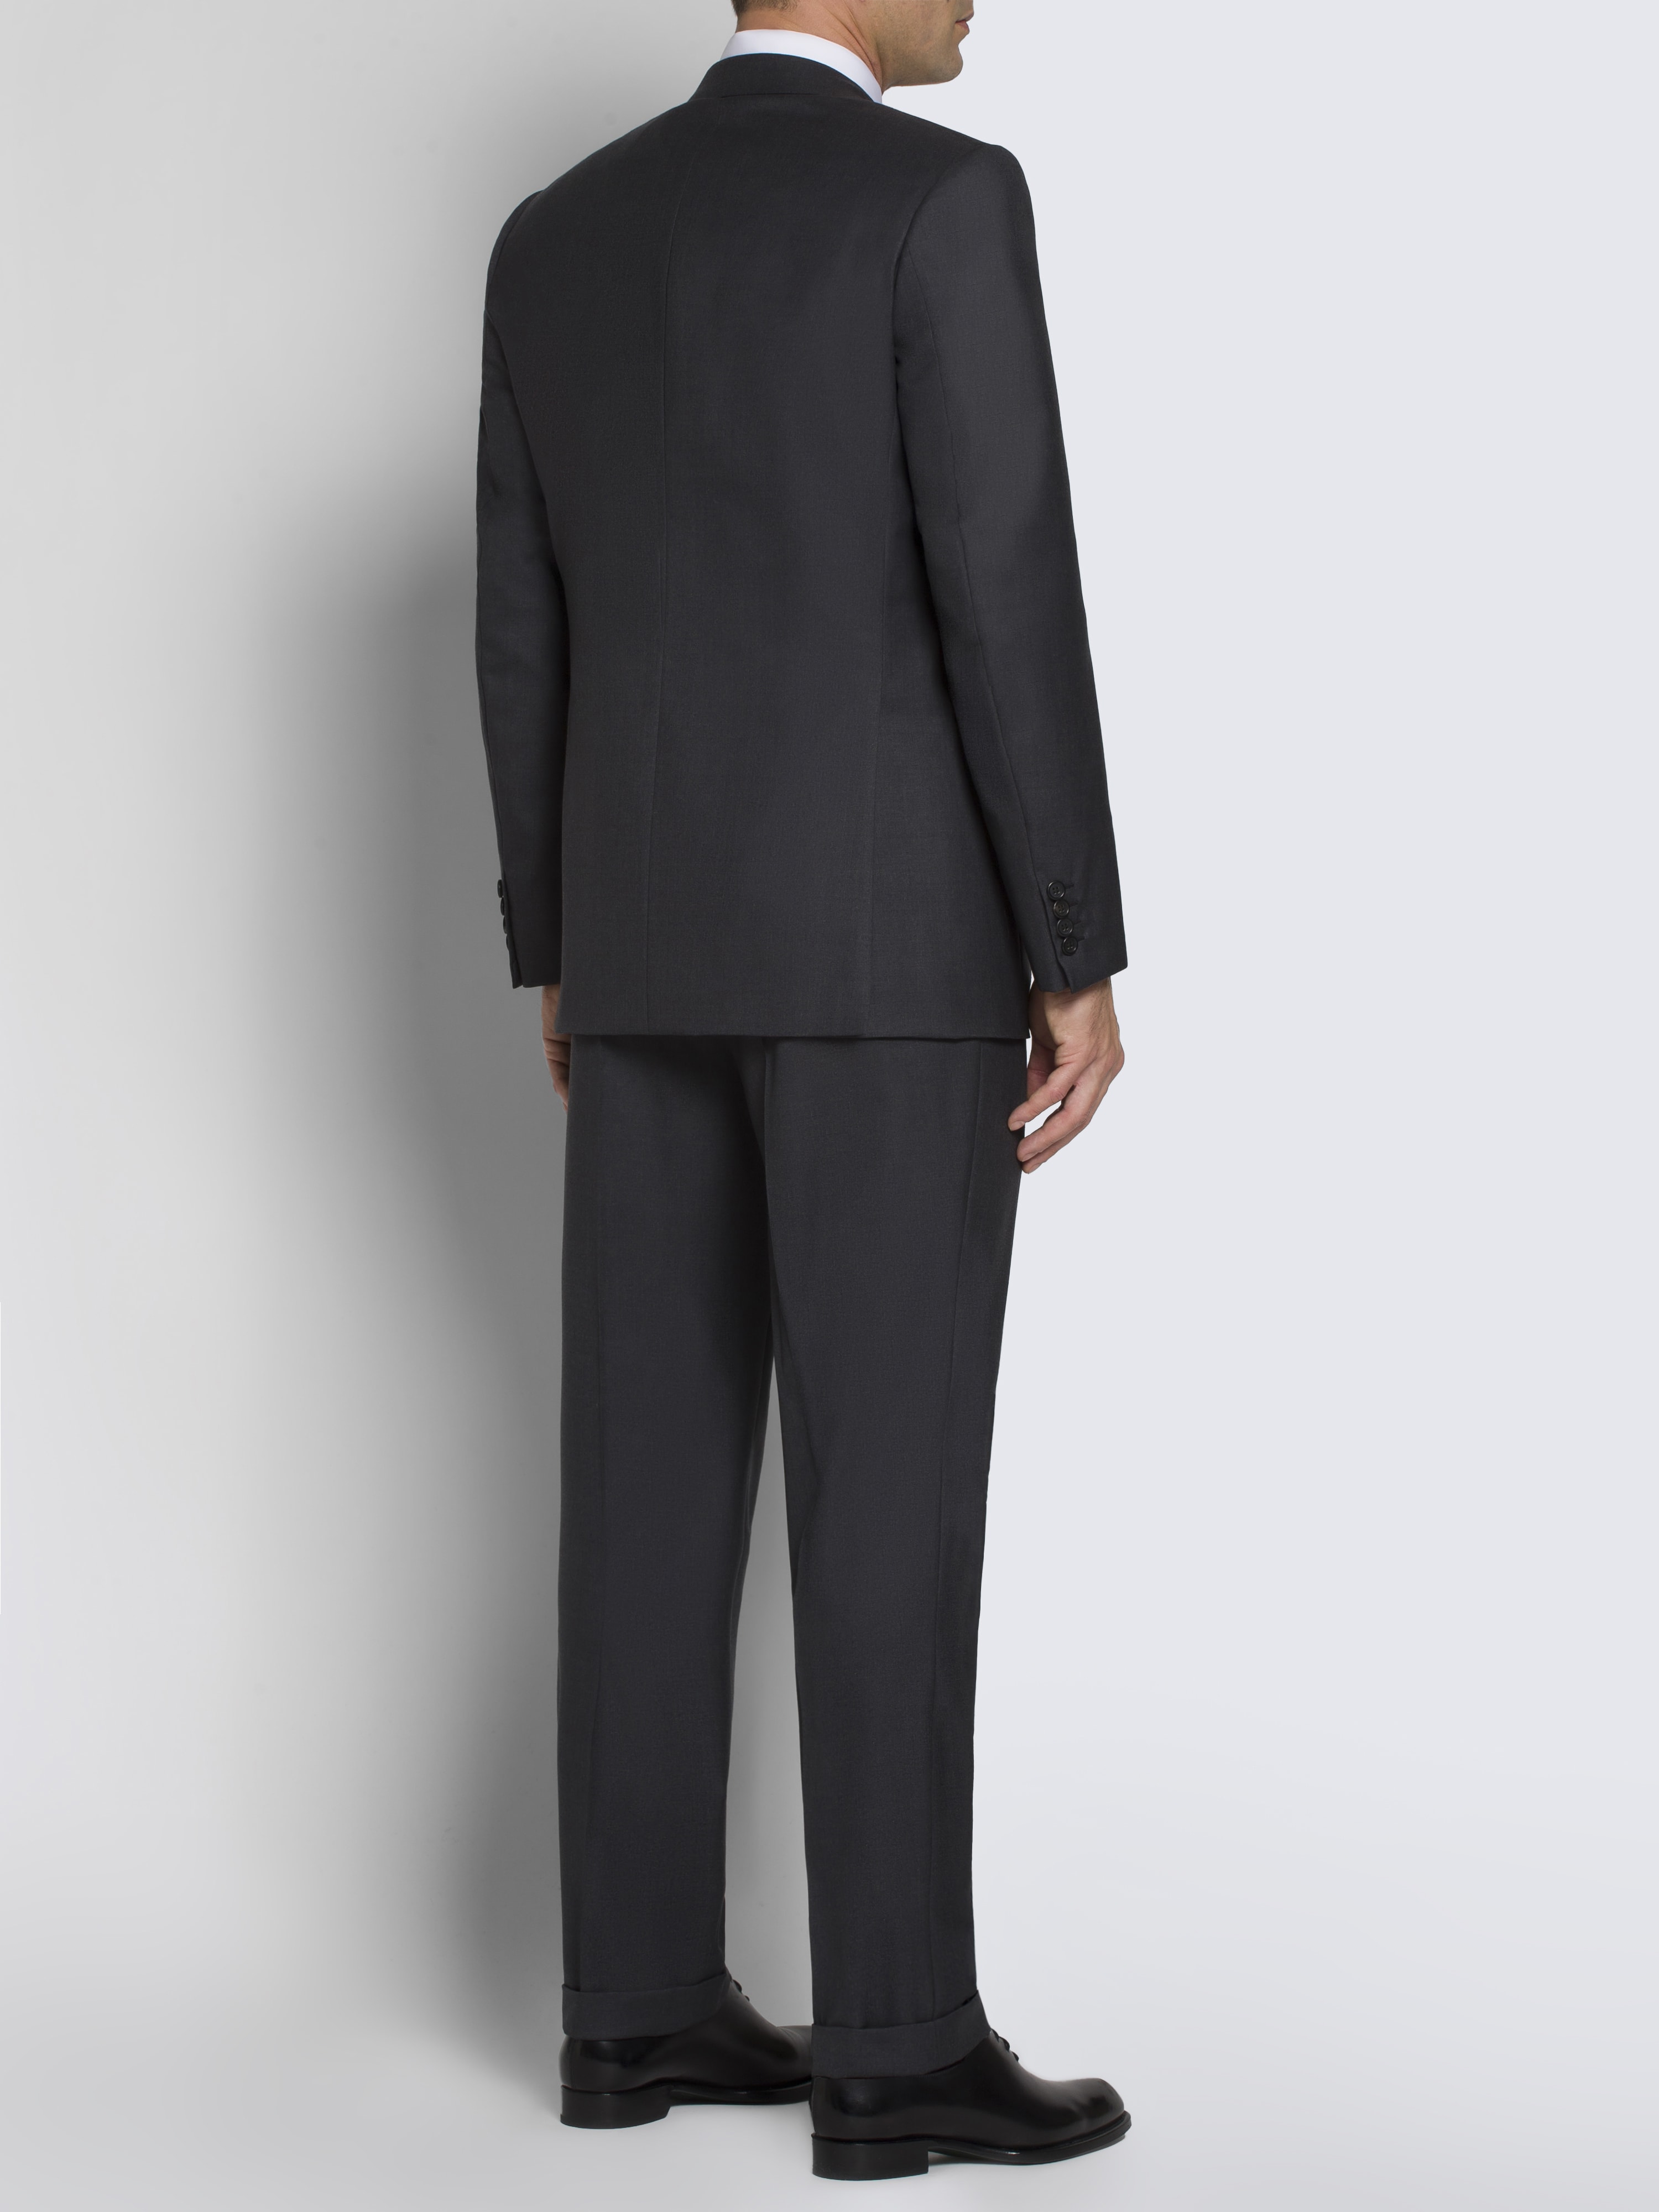 Essential grey Super 160's virgin wool Brunico suit